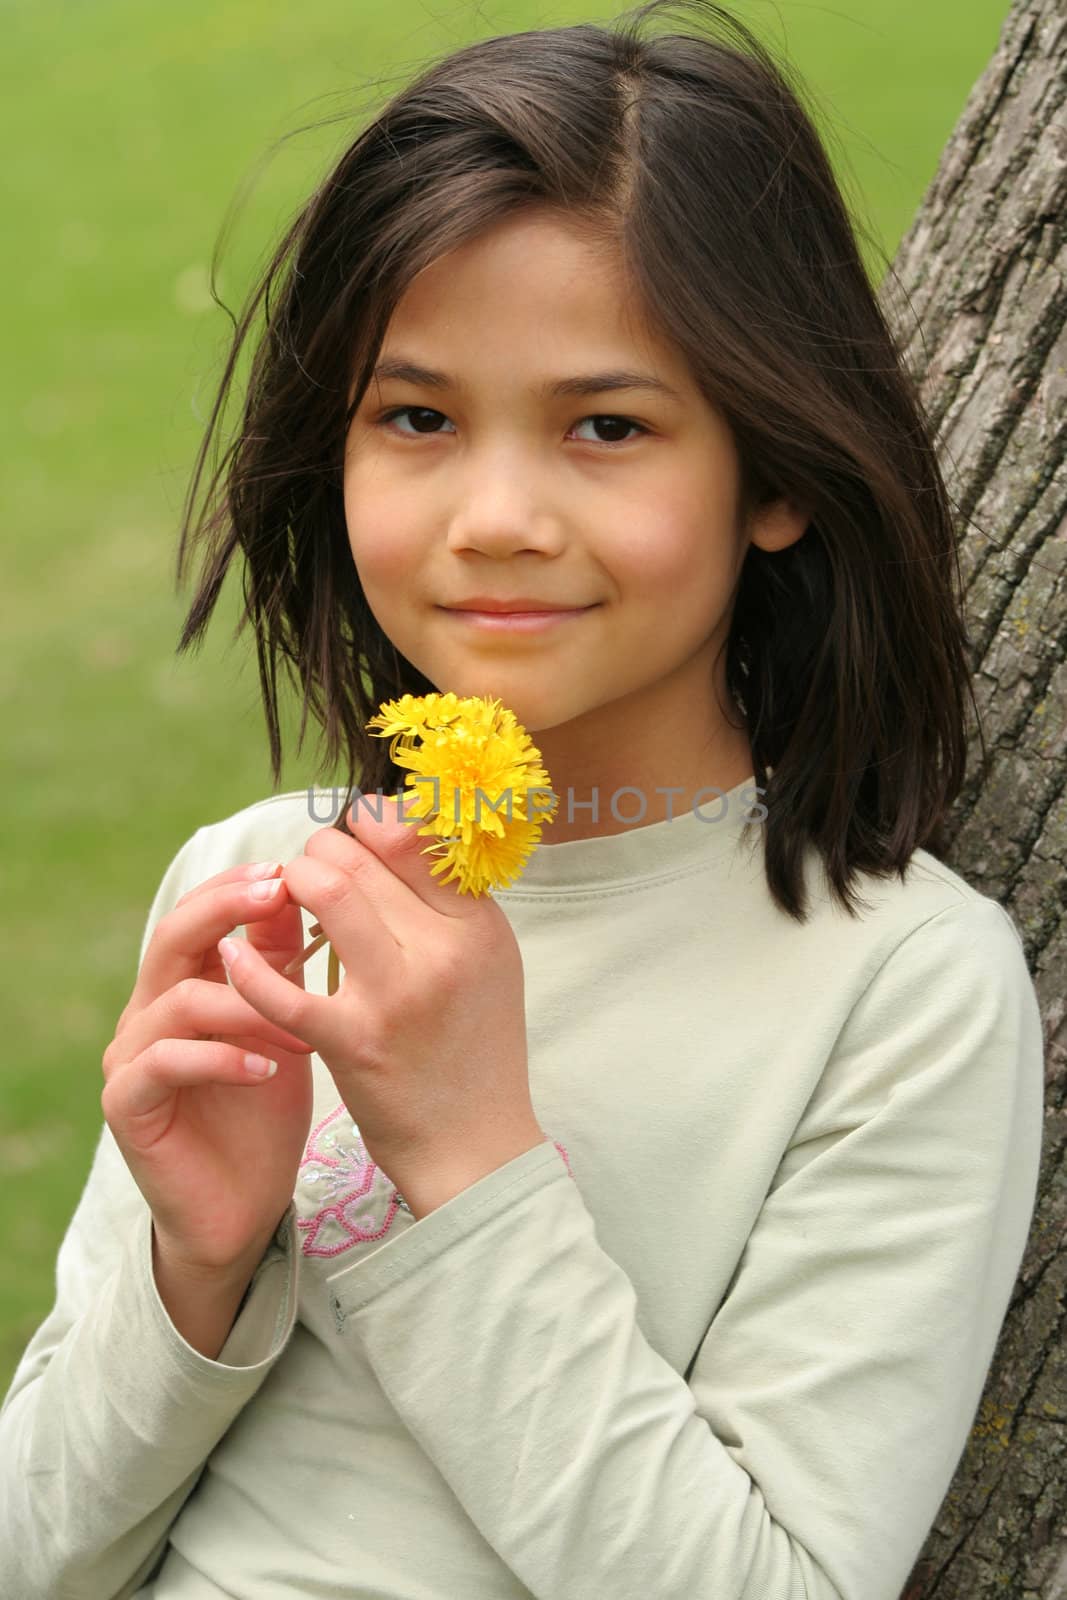 Girl holding freshly picked dandelions